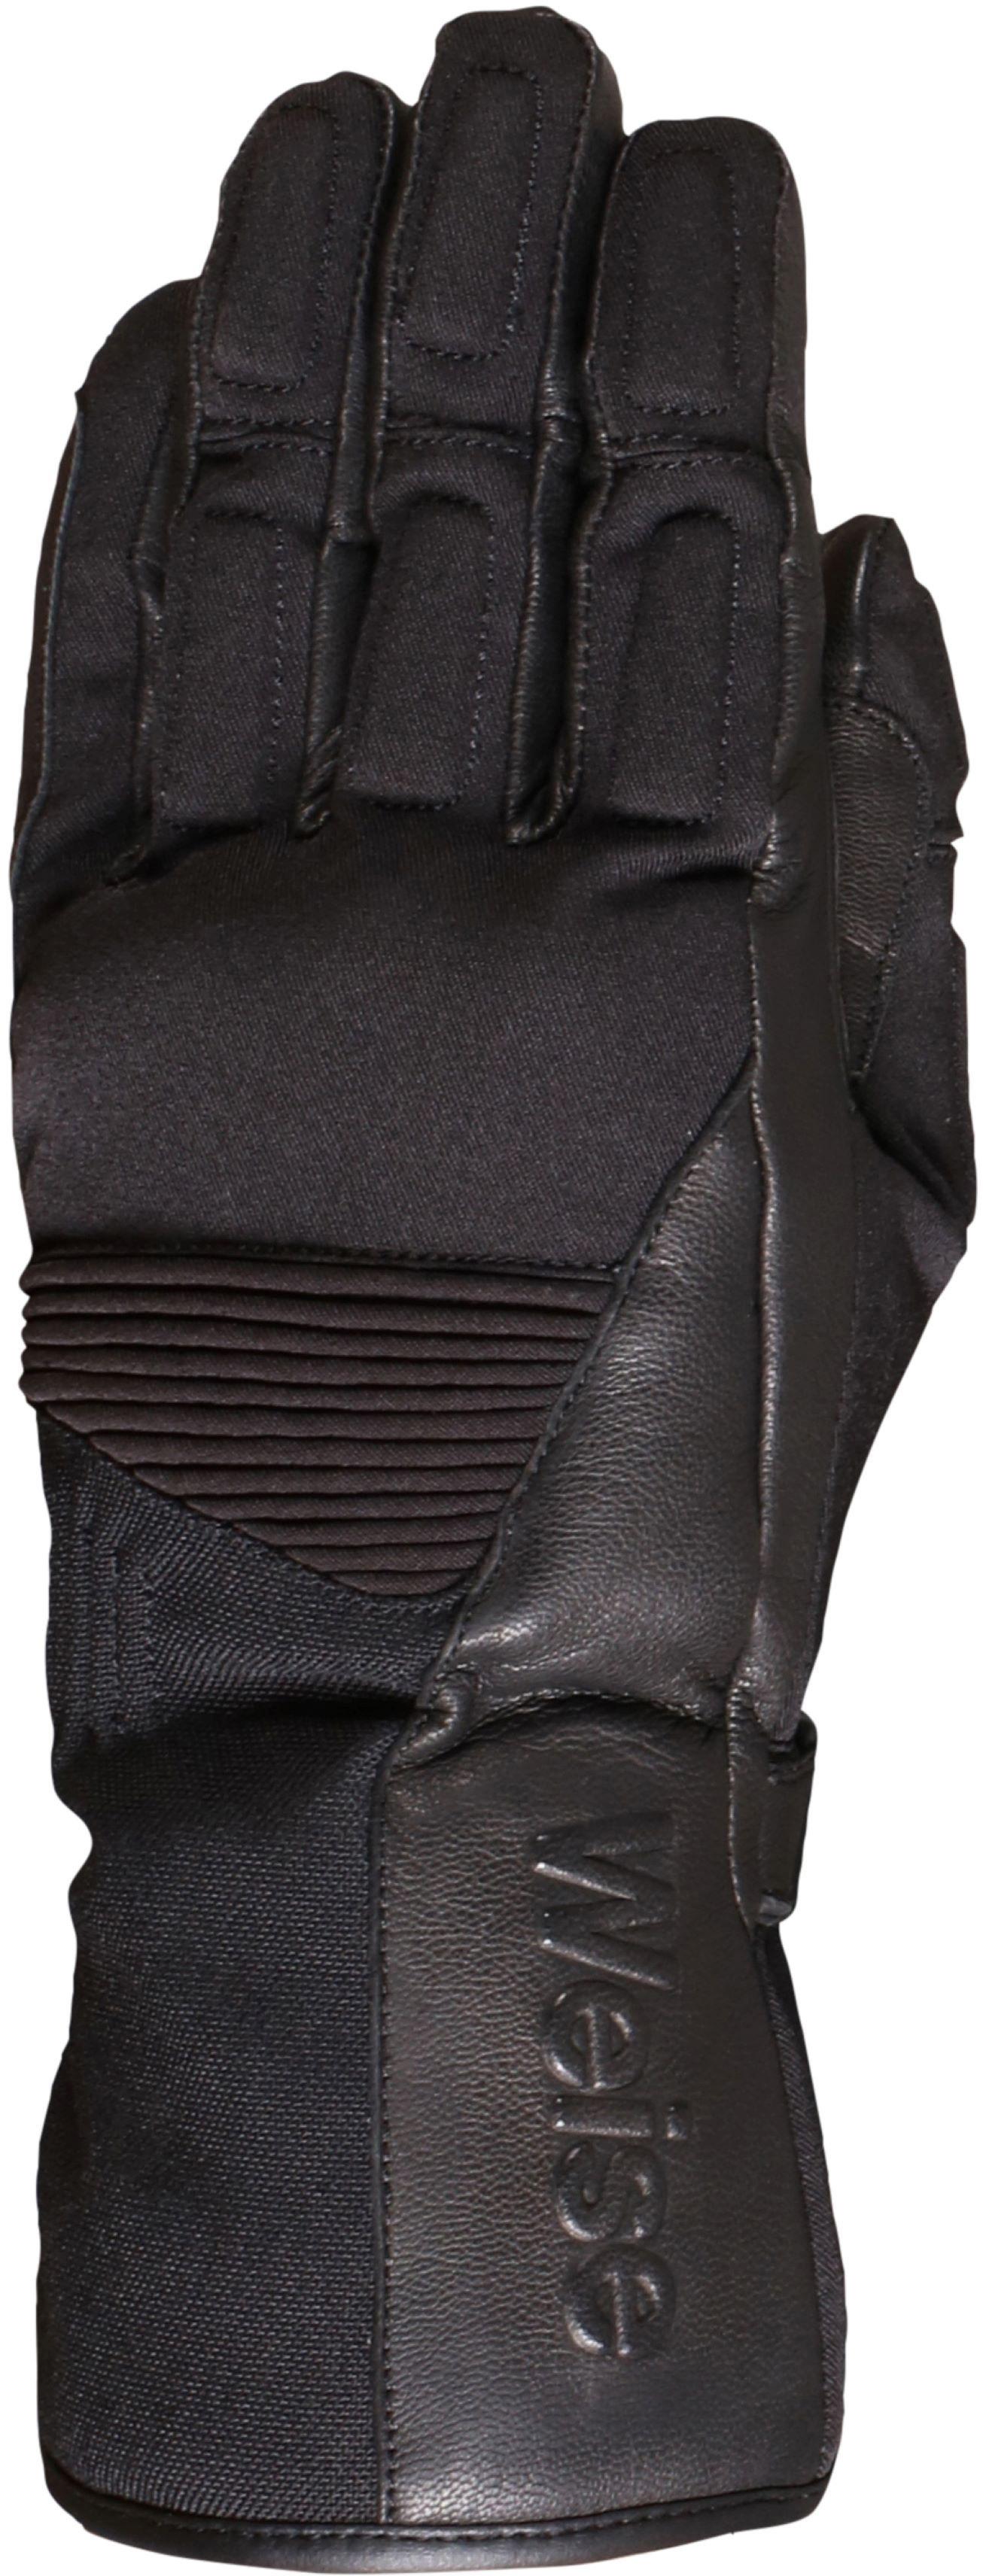 Weise Rider Motorcycle Gloves - Black, 3Xl